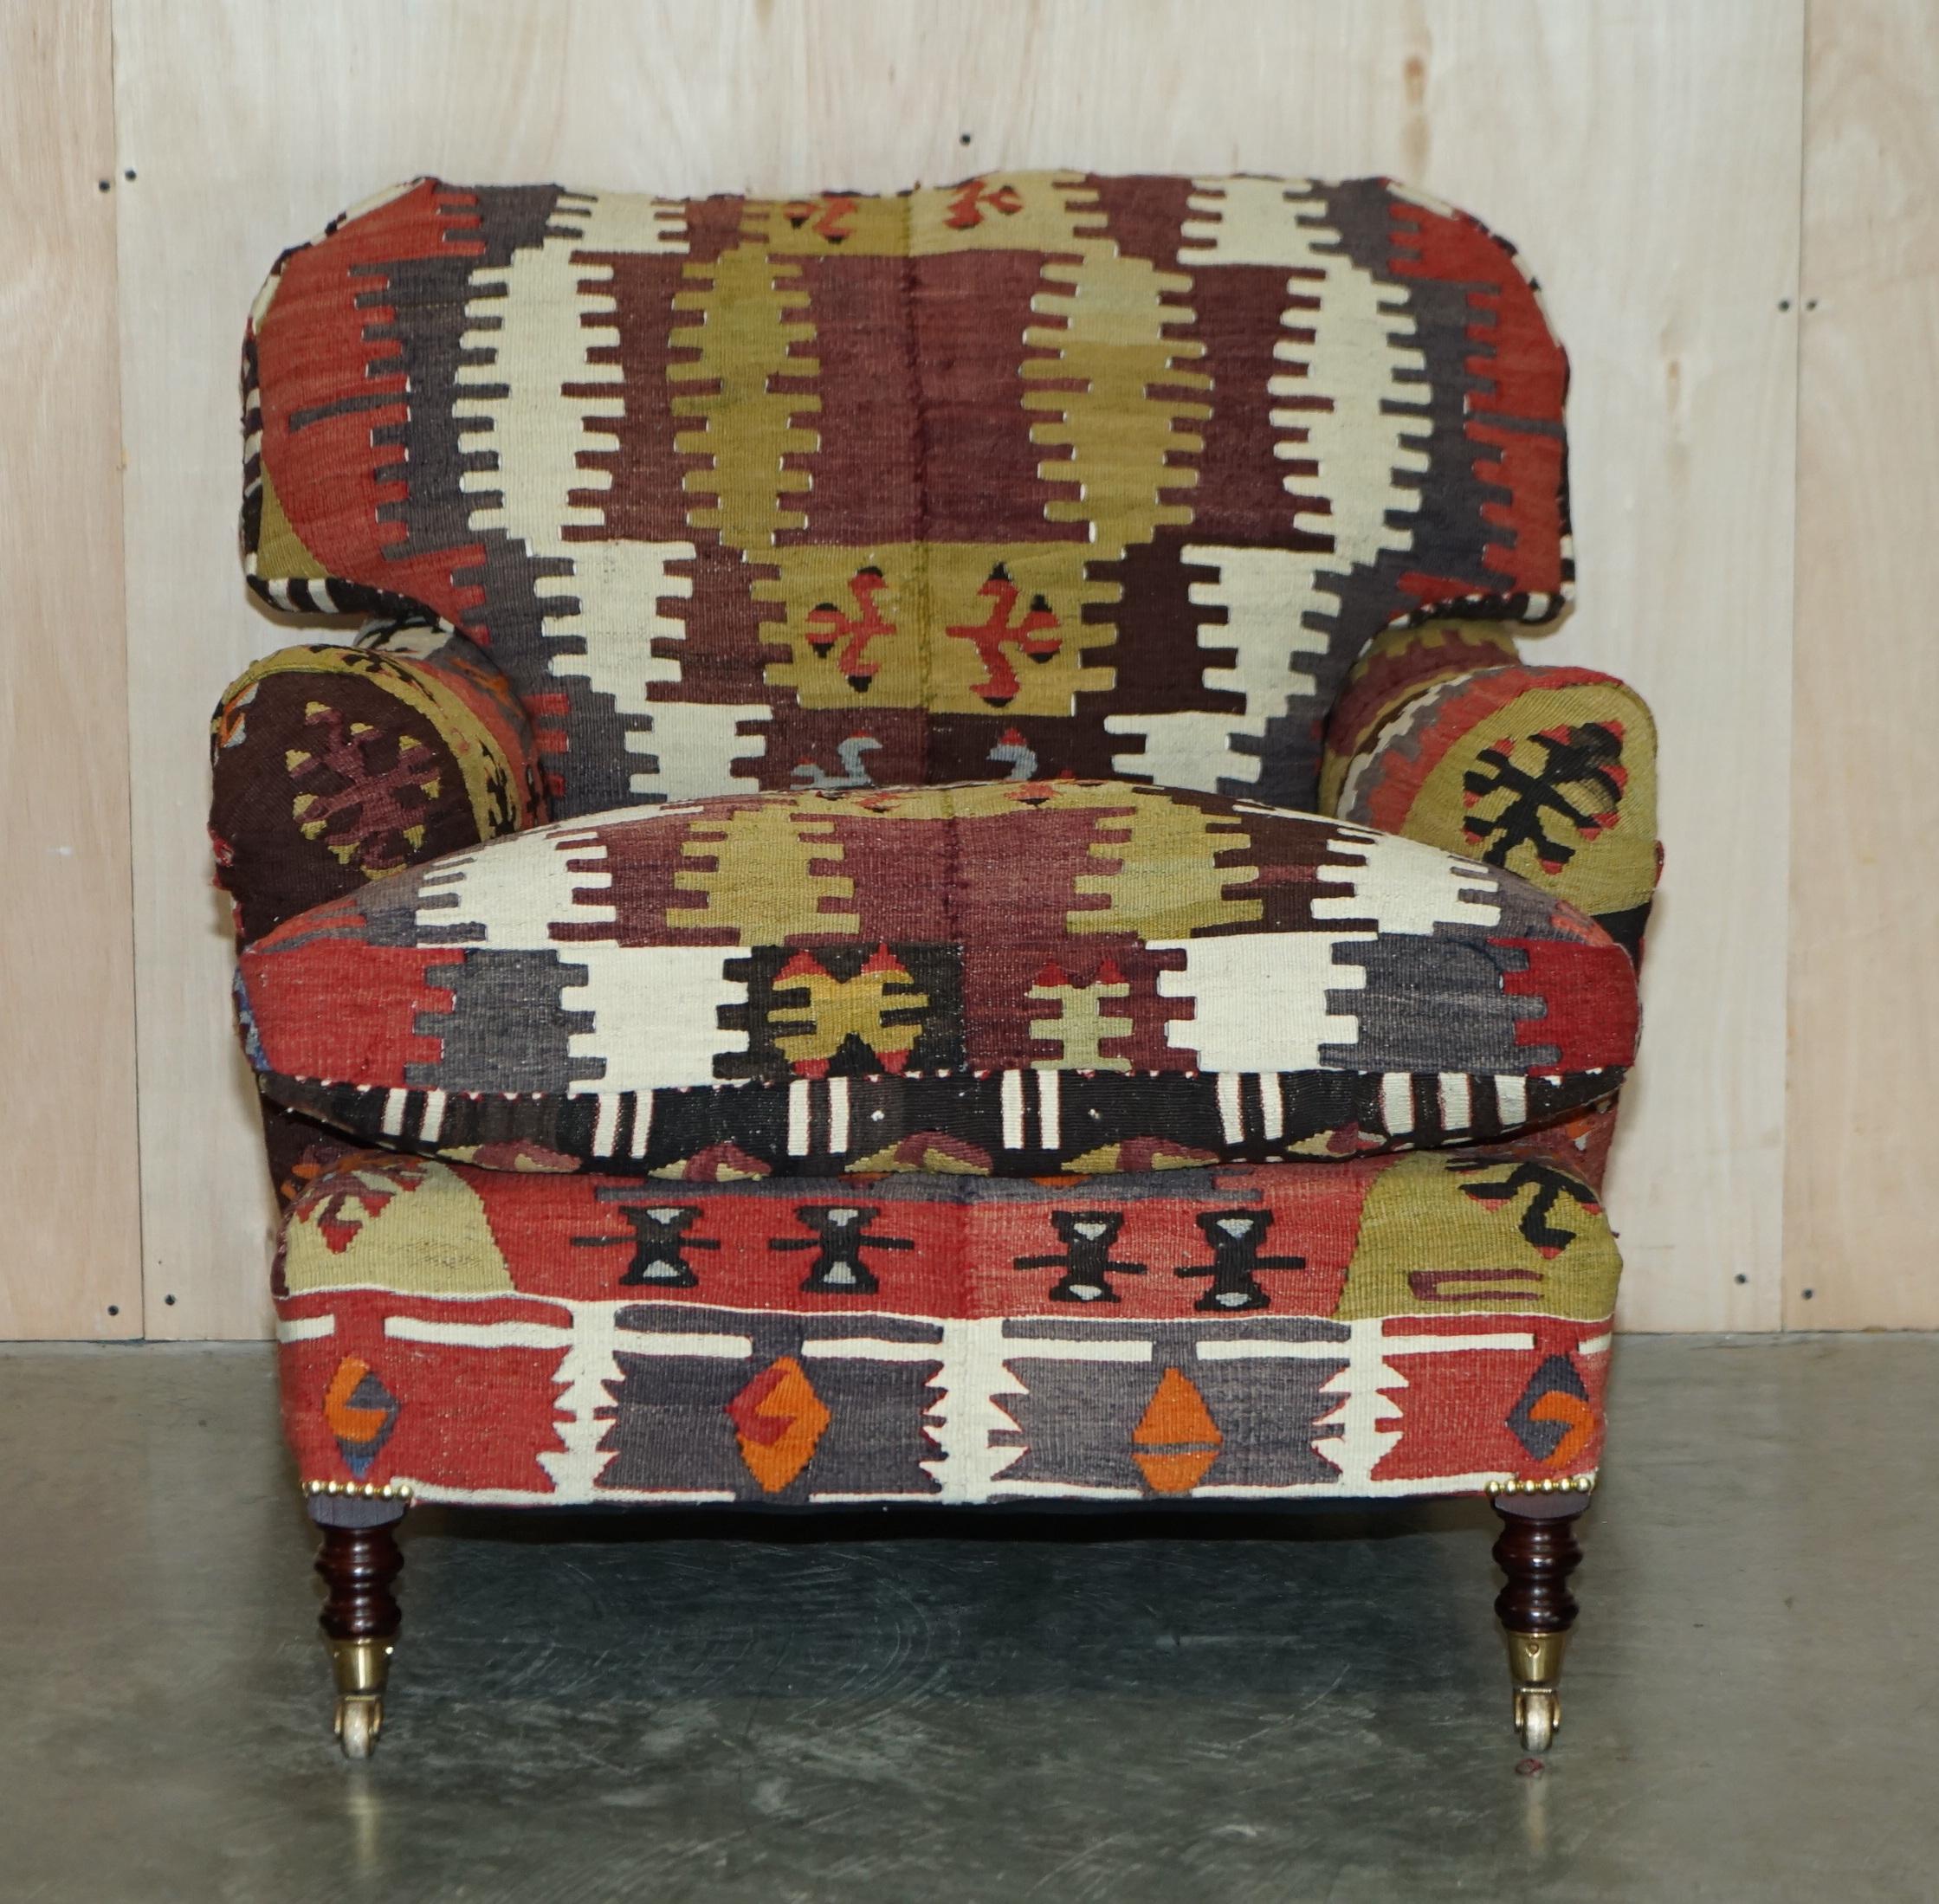 Nous sommes ravis d'offrir à la vente ce fauteuil rembourré Kilim, fabriqué à la main en Angleterre, avec un bras standard, un dossier et une base en coussin de plumes, de la signature George Smith, qui a été fait sur mesure sur commande.

Une